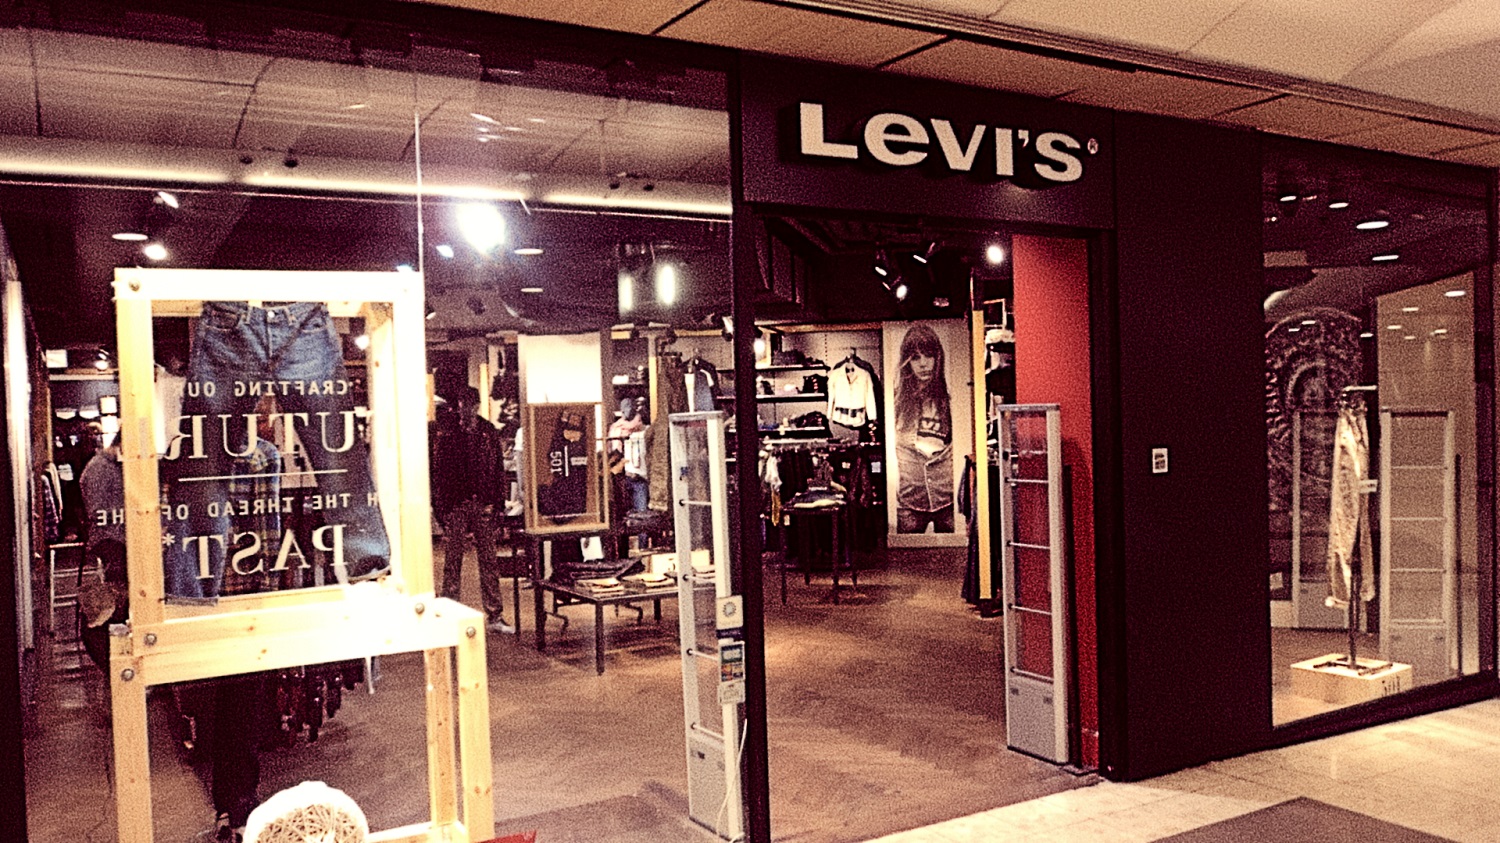 Levis-service-client